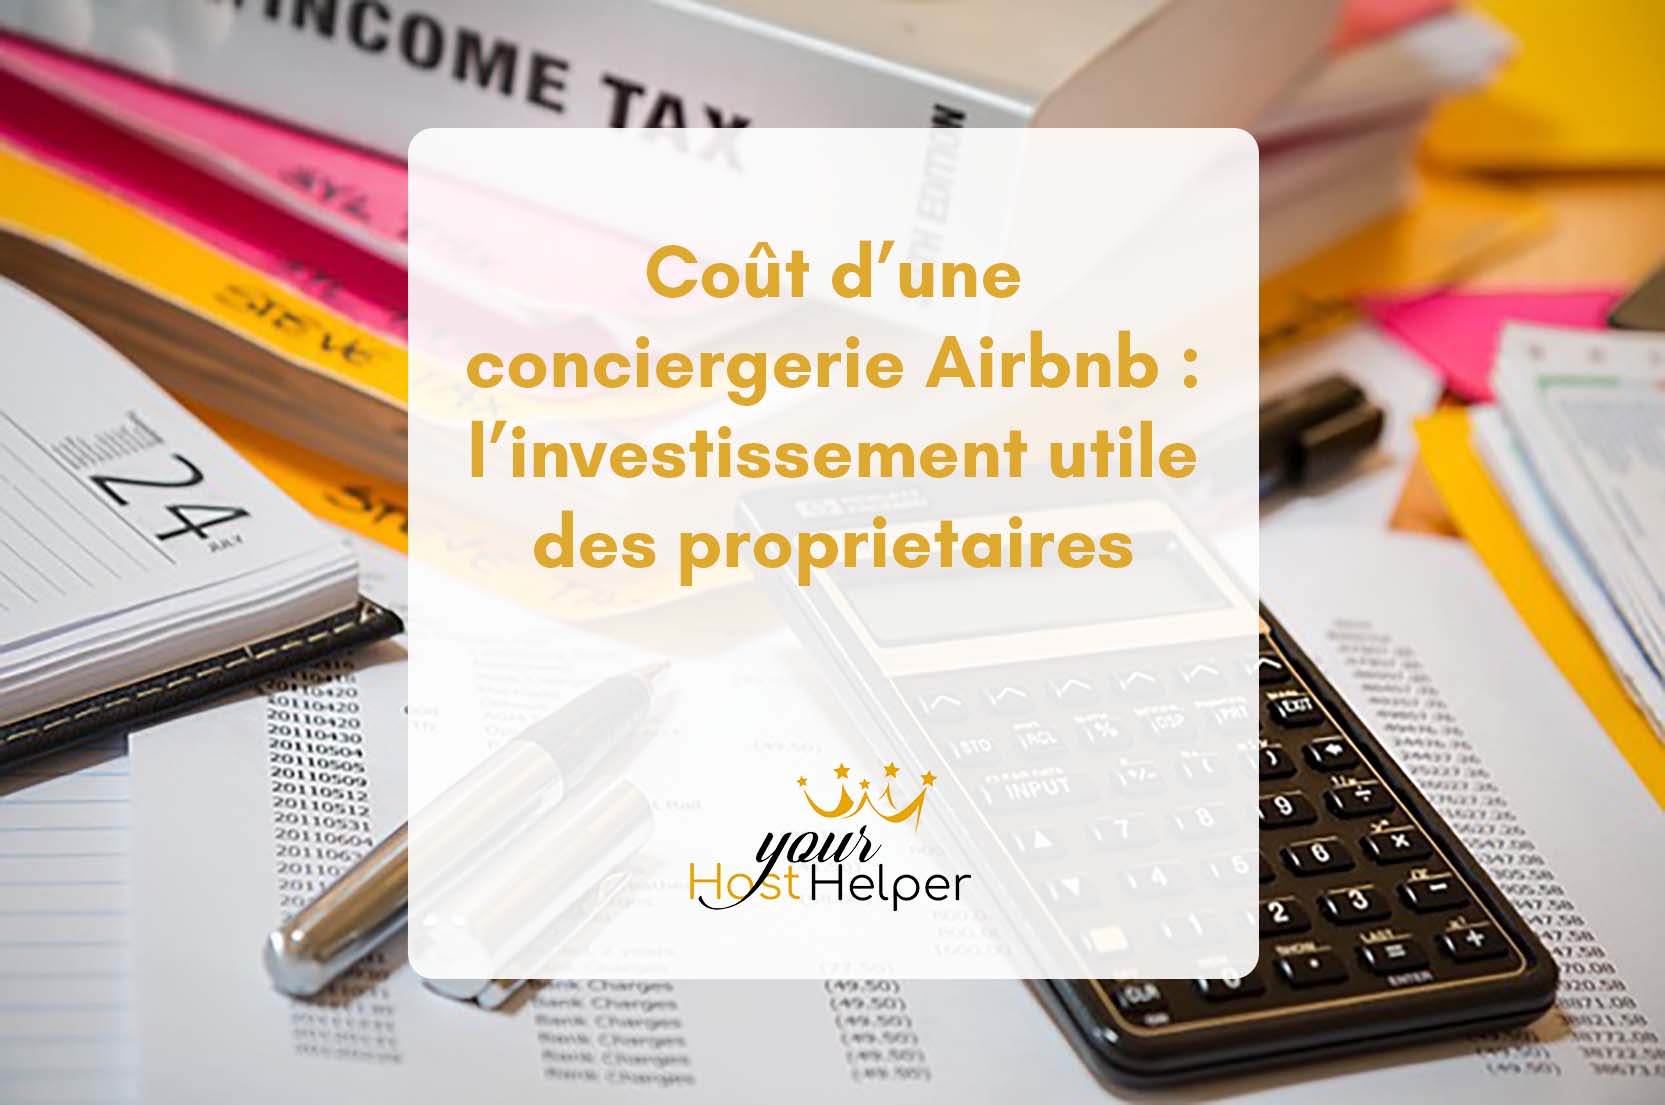 You are currently viewing <strong>Coût d’une conciergerie Airbnb : l’investissement utile des propriétaires, expliqué par votre conciergerie de Larmor-Plage</strong>